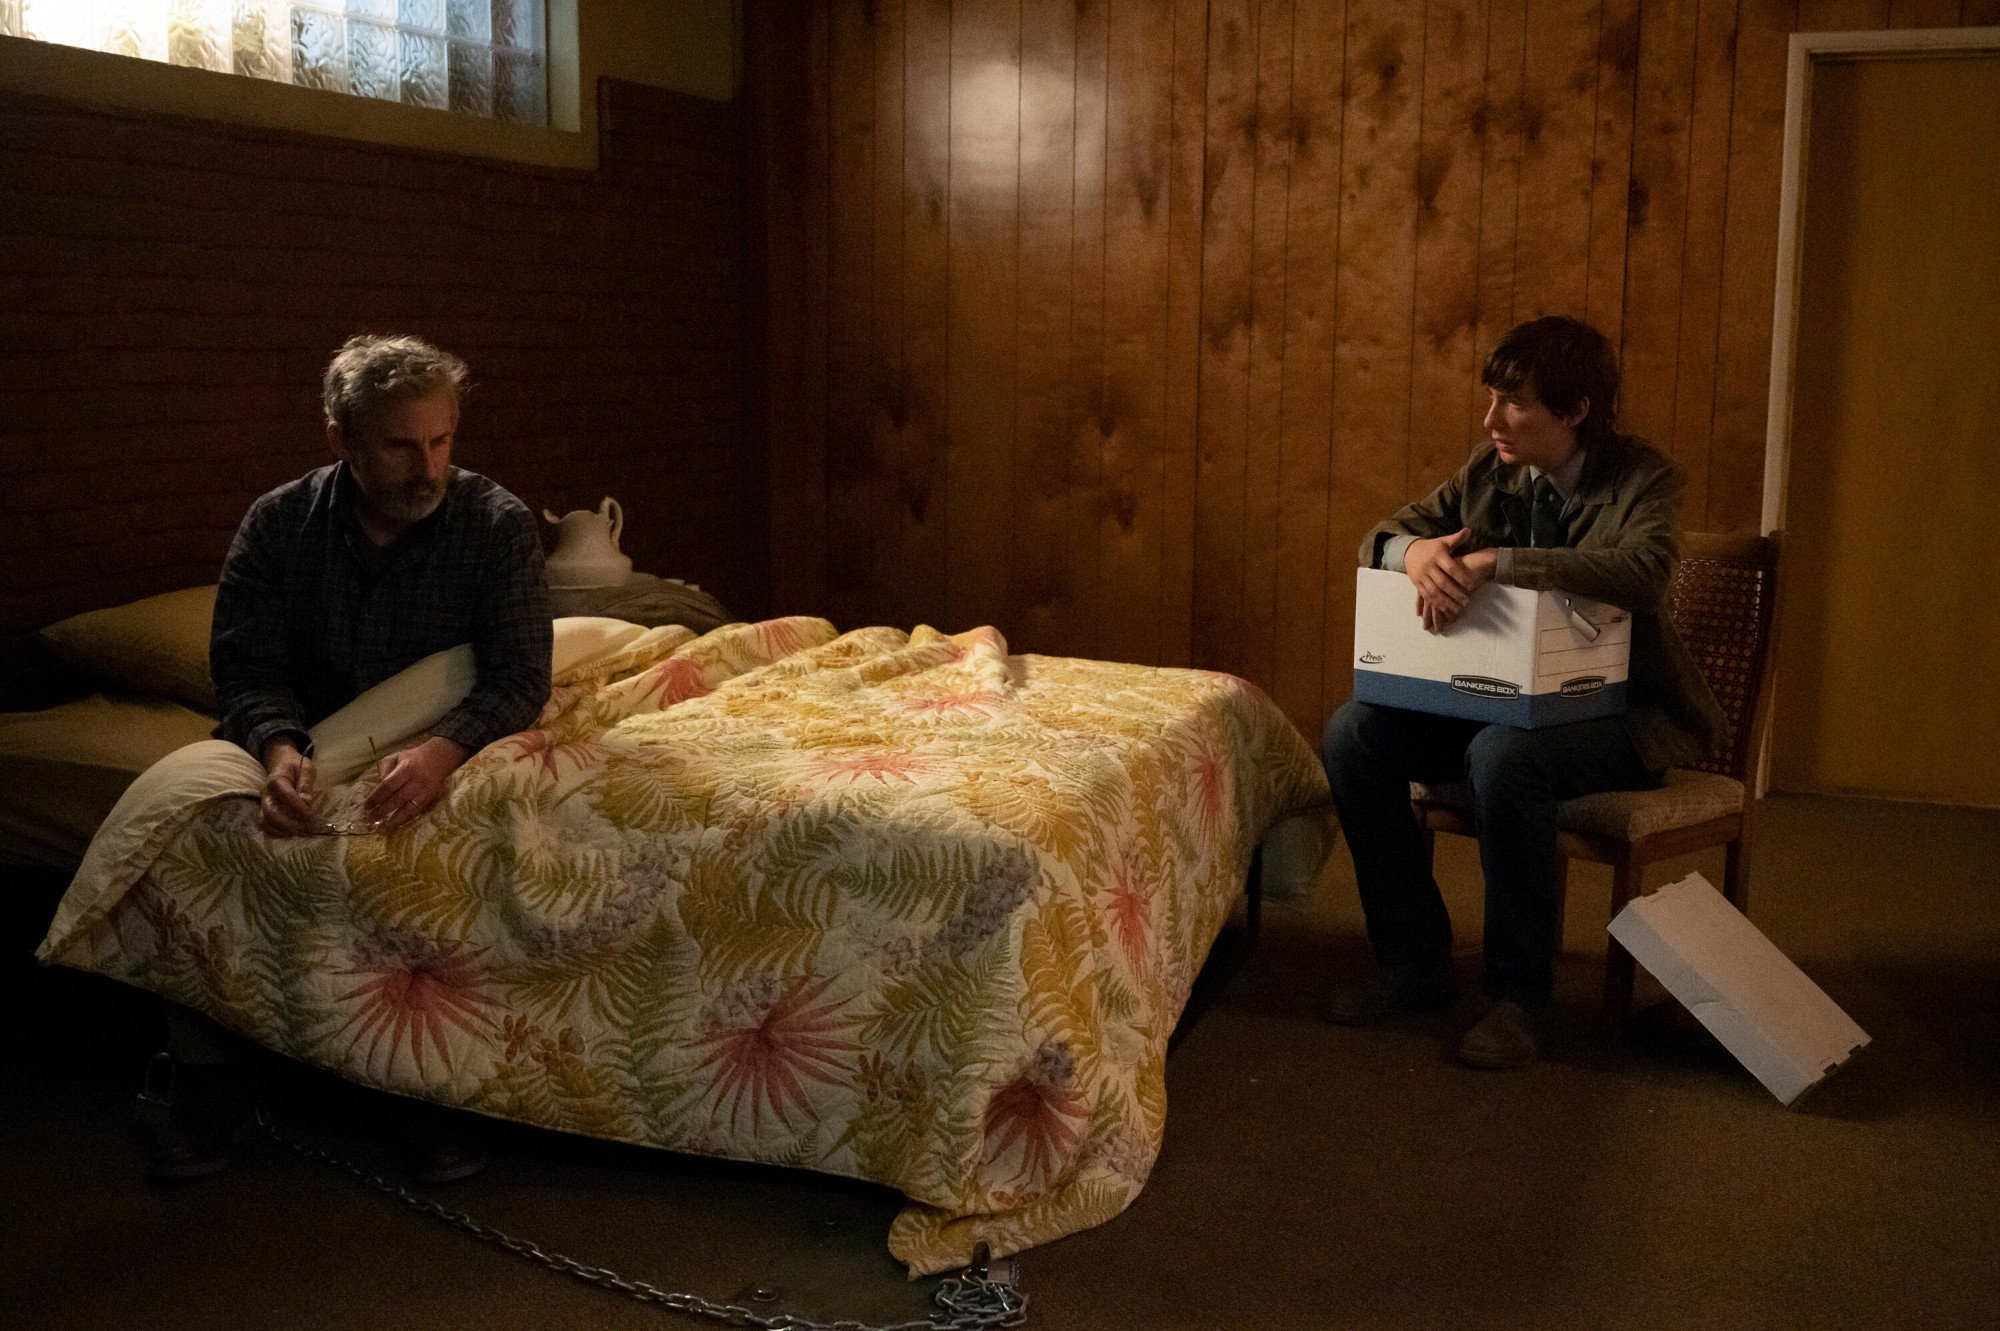 スティーブ・カレルとドーナル・グリーソンは、9 月 6 日にエピソード 3 をドロップします。カレルのキャラクターはベッドのカバーの下に座っており、グリーソンのキャラクターはベッドの隣の椅子に座って箱を持っています.